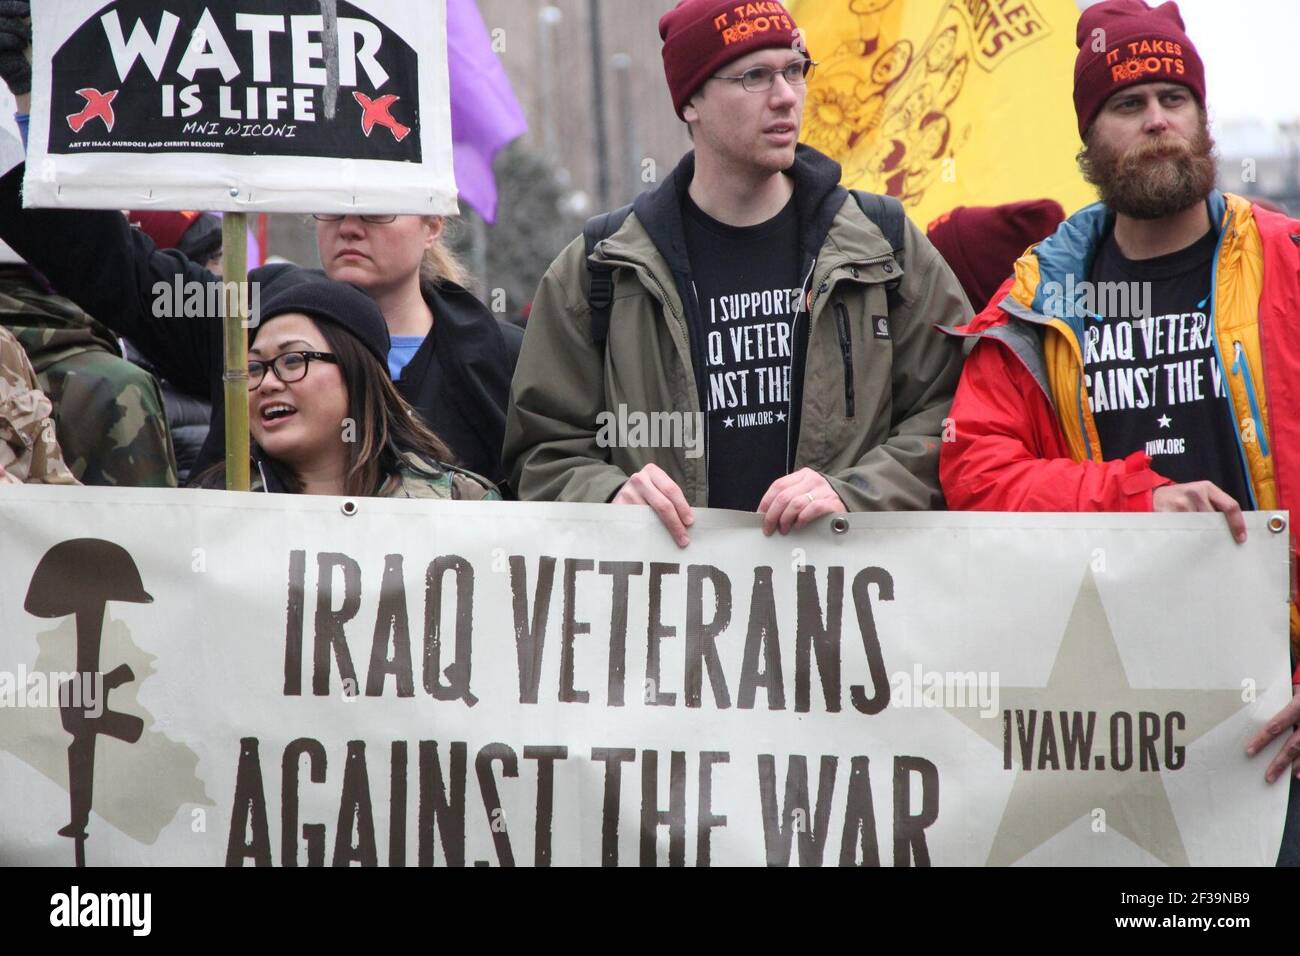 Los manifestantes se pronuncian en contra de la guerra —y en apoyo del agua— cuando Donald Trump juró como presidente de los Estados Unidos en 45th en Washington, D.C., Jan, 20, 2017. Foto de stock